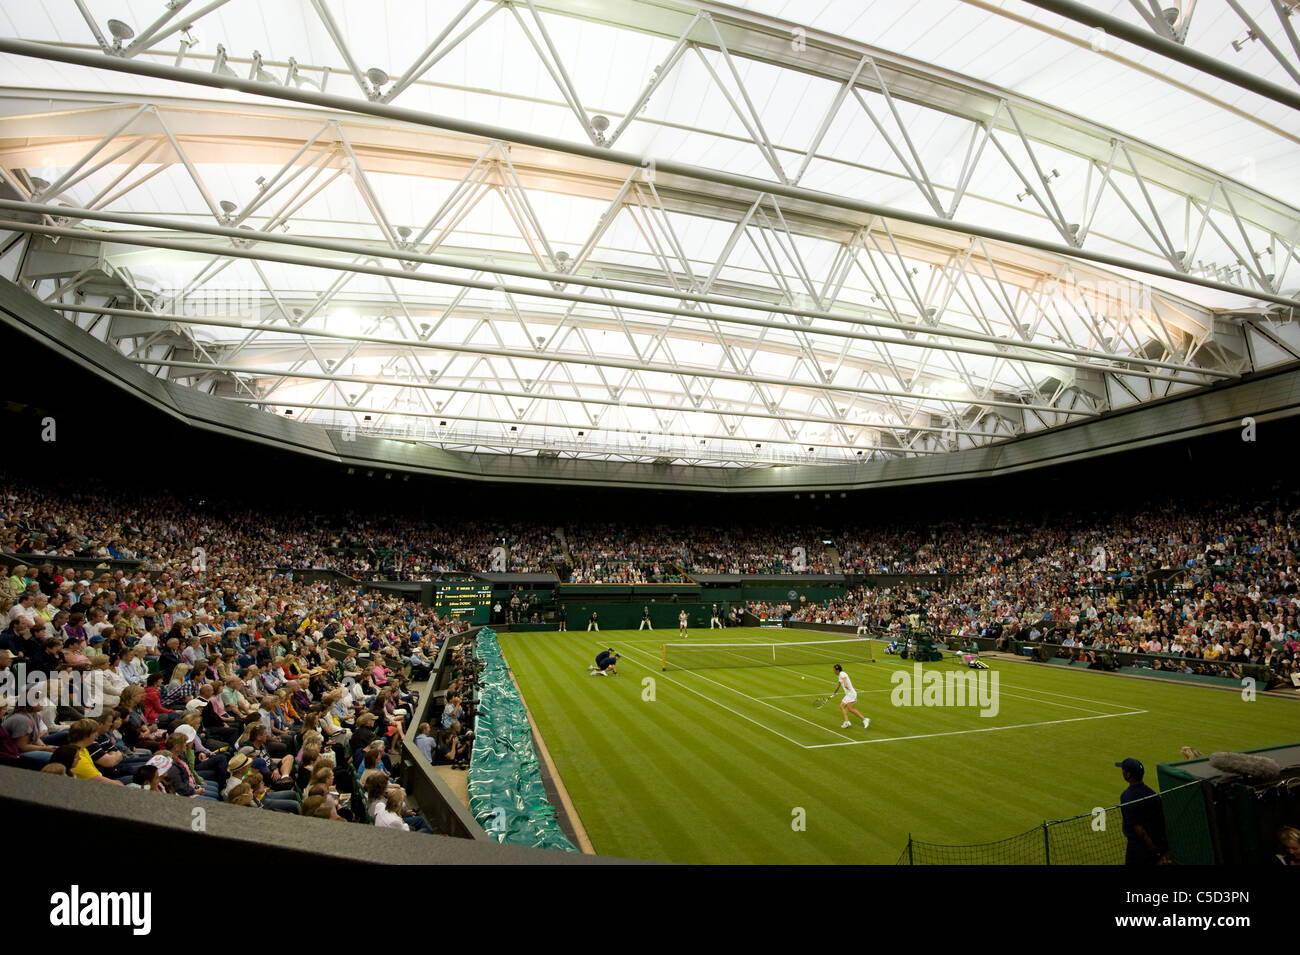 Vue de jouer sur le Court central sous le toit lors de l'édition 2011 des Championnats de tennis de Wimbledon Banque D'Images